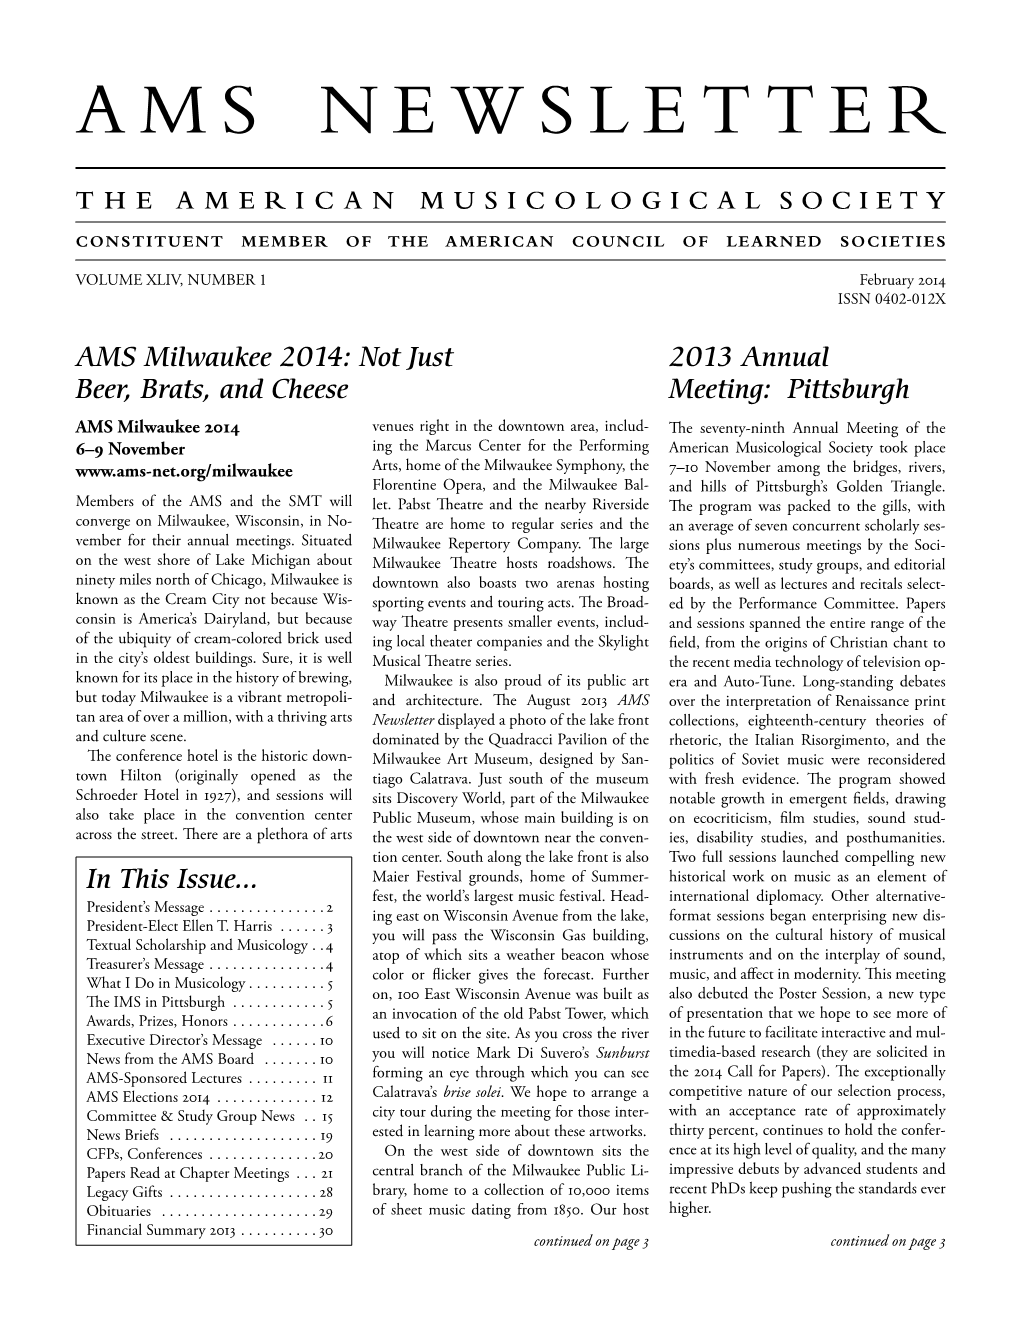 AMS Newsletter February 2014